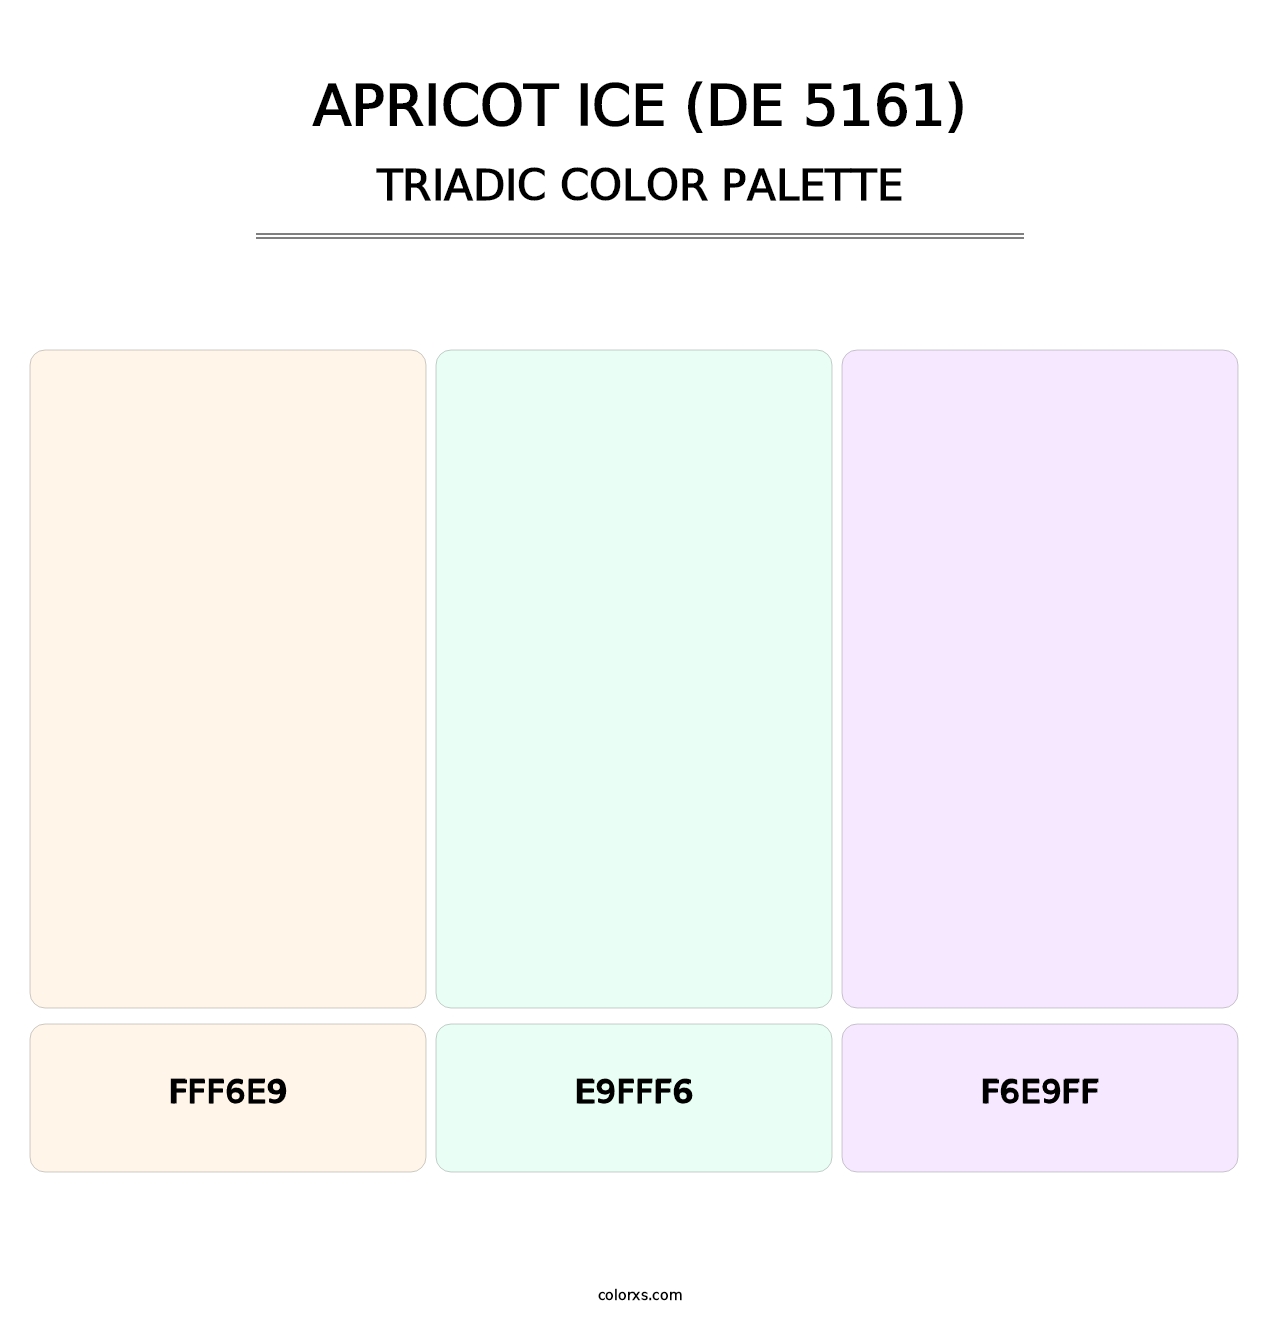 Apricot Ice (DE 5161) - Triadic Color Palette